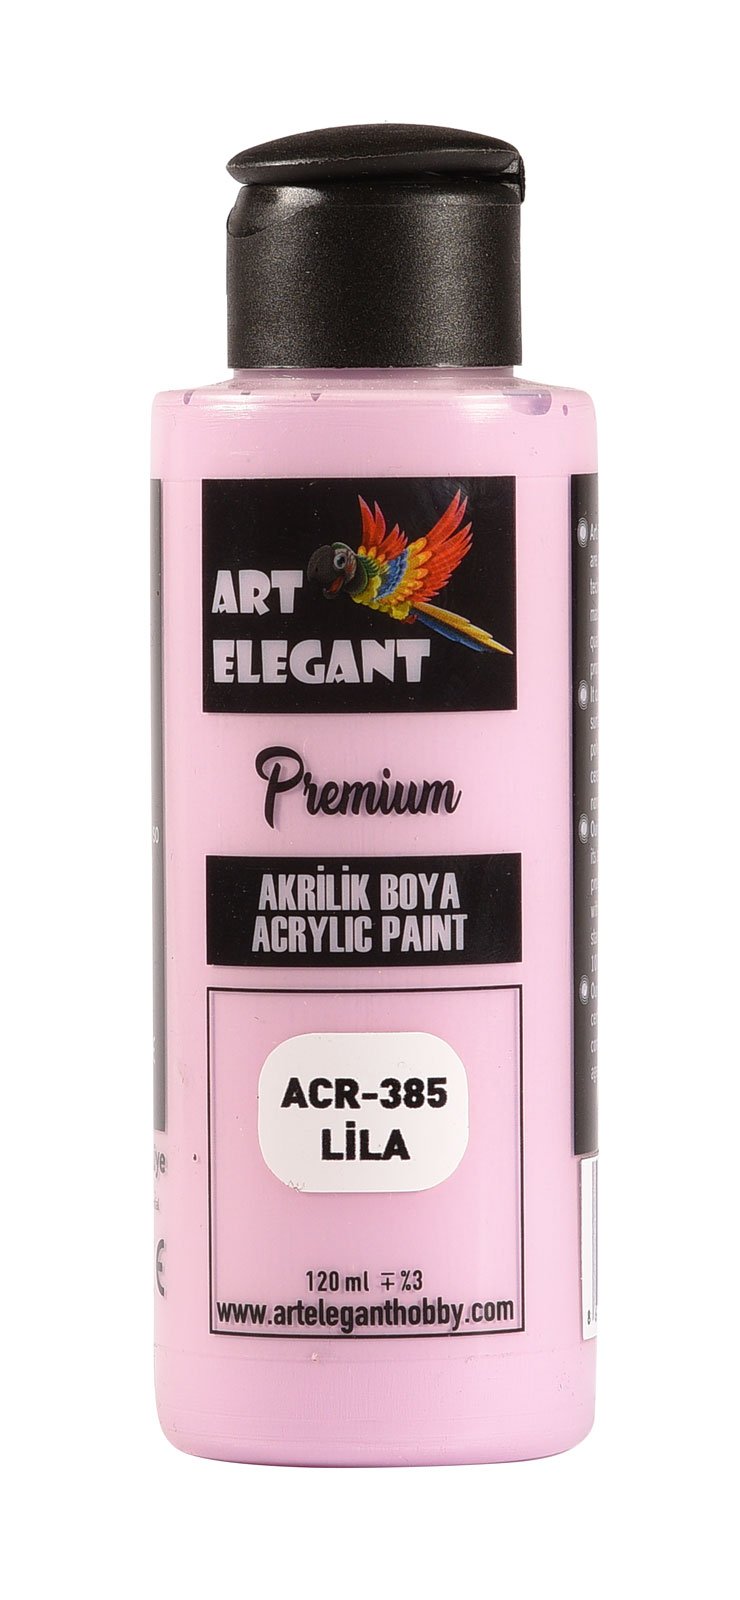 Art Elegant Akrilik Boya 120ml Acr-385 Lila